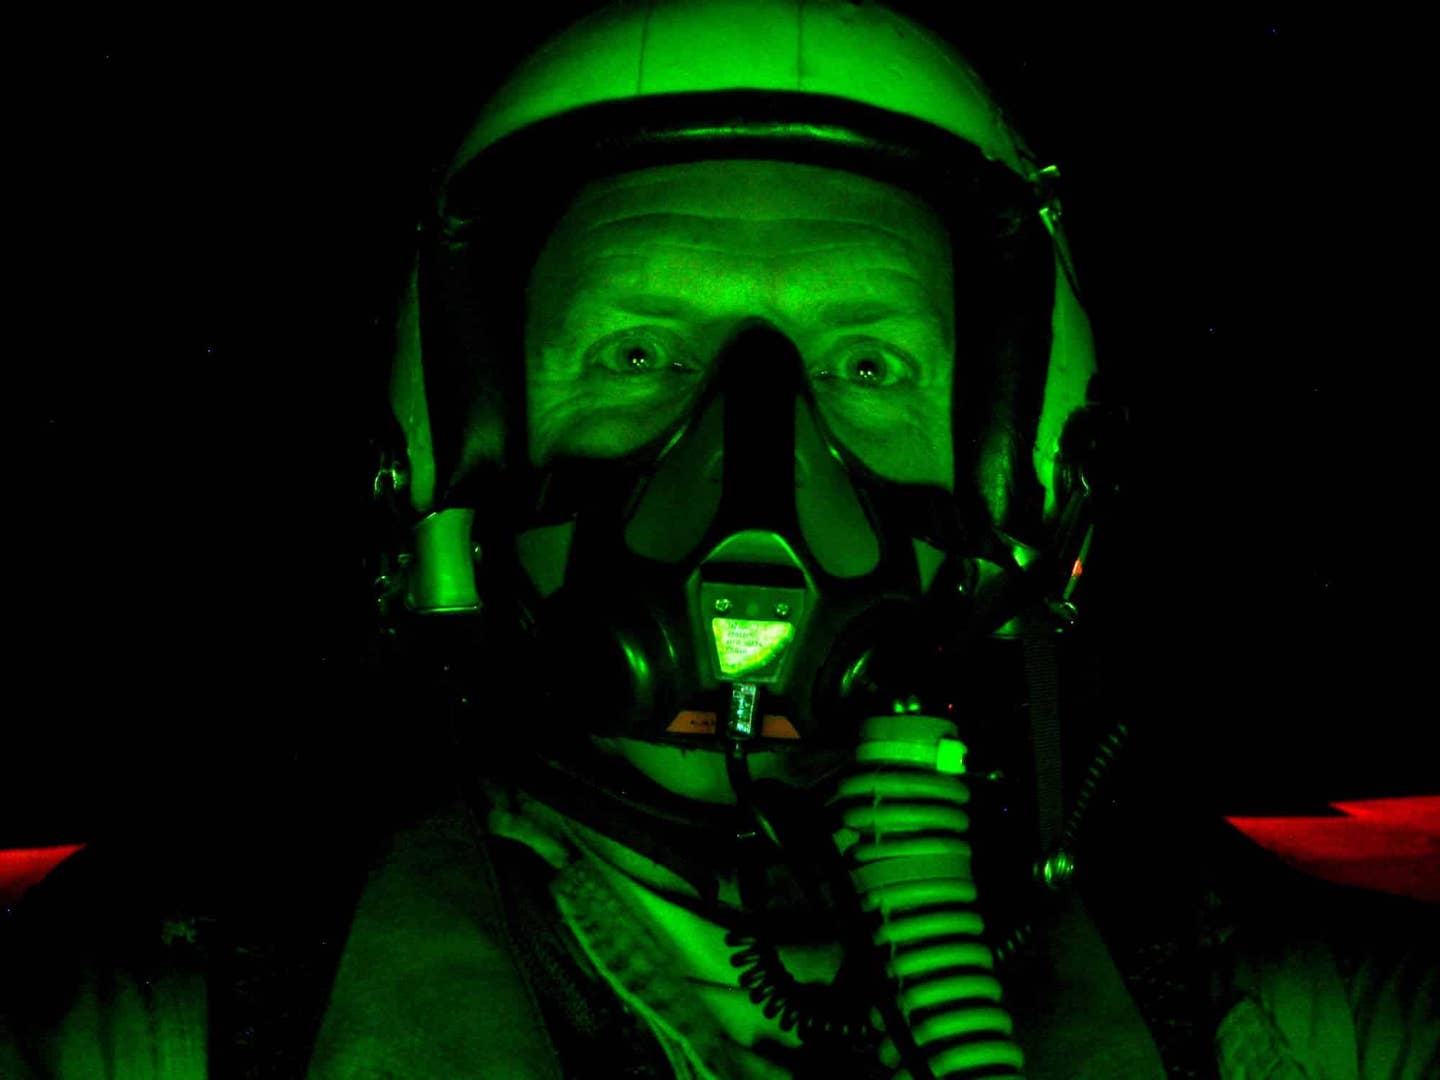 Scott night flying in the Hornet. (Scott "Intake" Kartvedt)